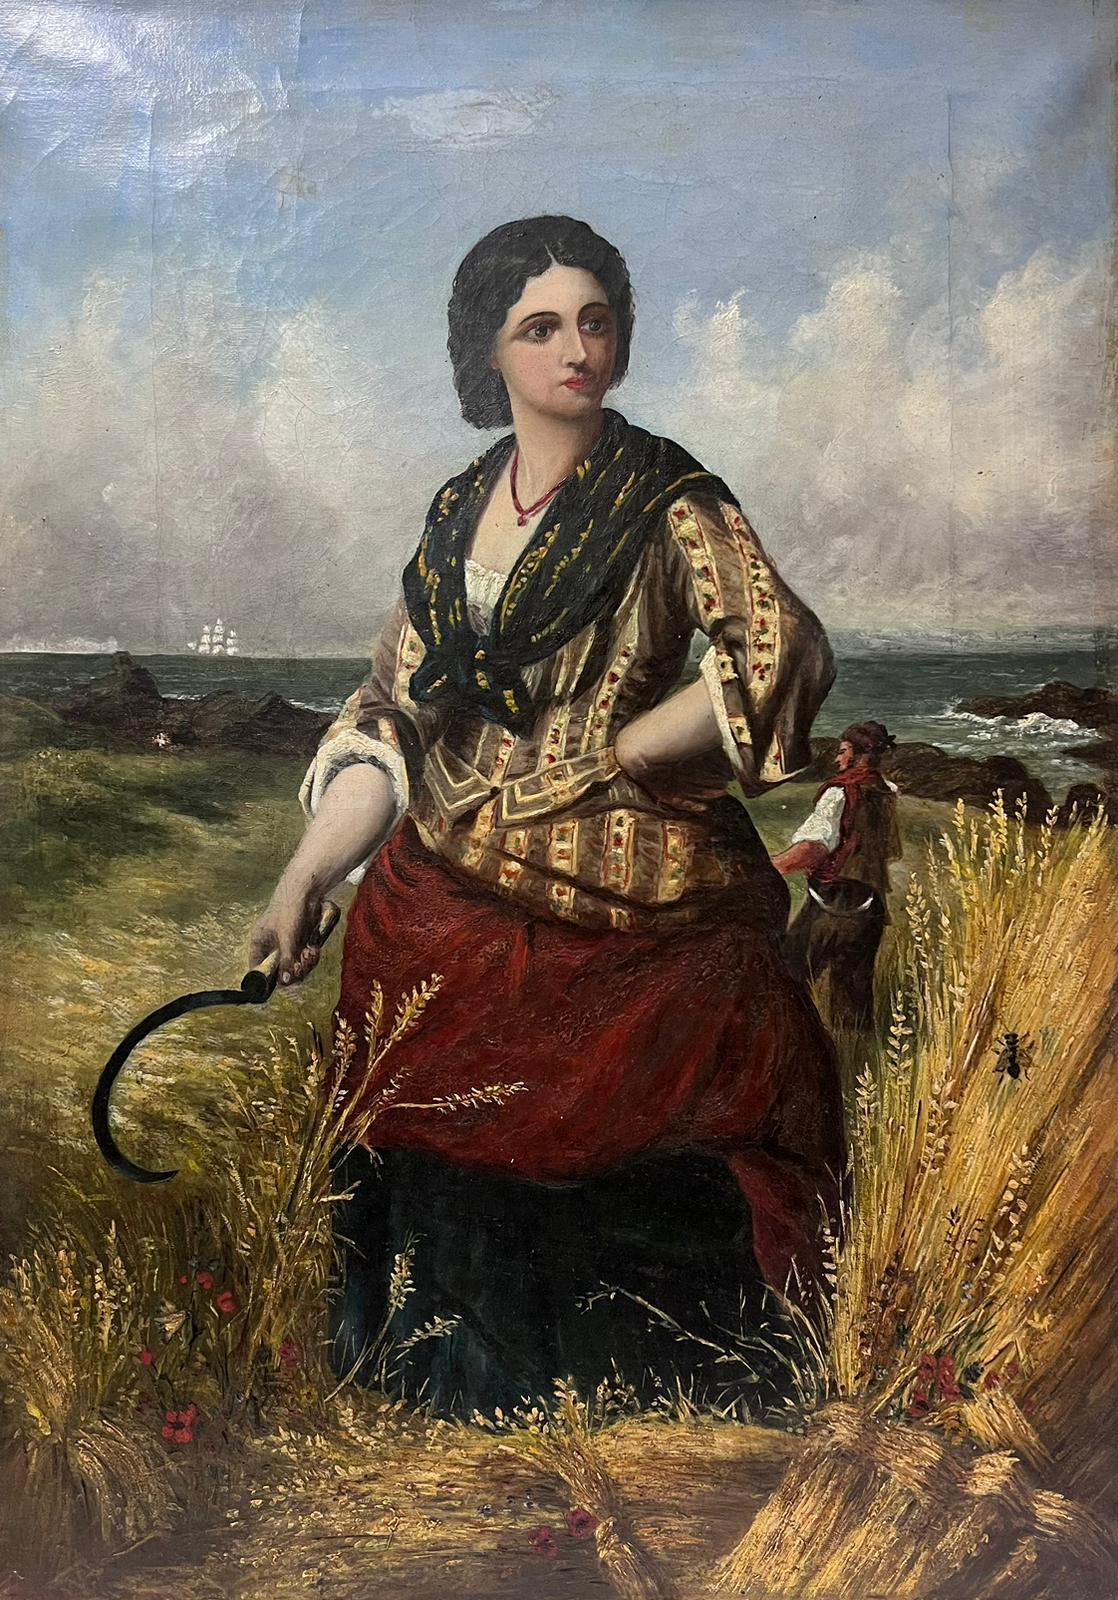 Portrait Painting English 19th Century - Woman in Harvest Fields Next to Coastal Seascape, peinture à l'huile victorienne sur toile